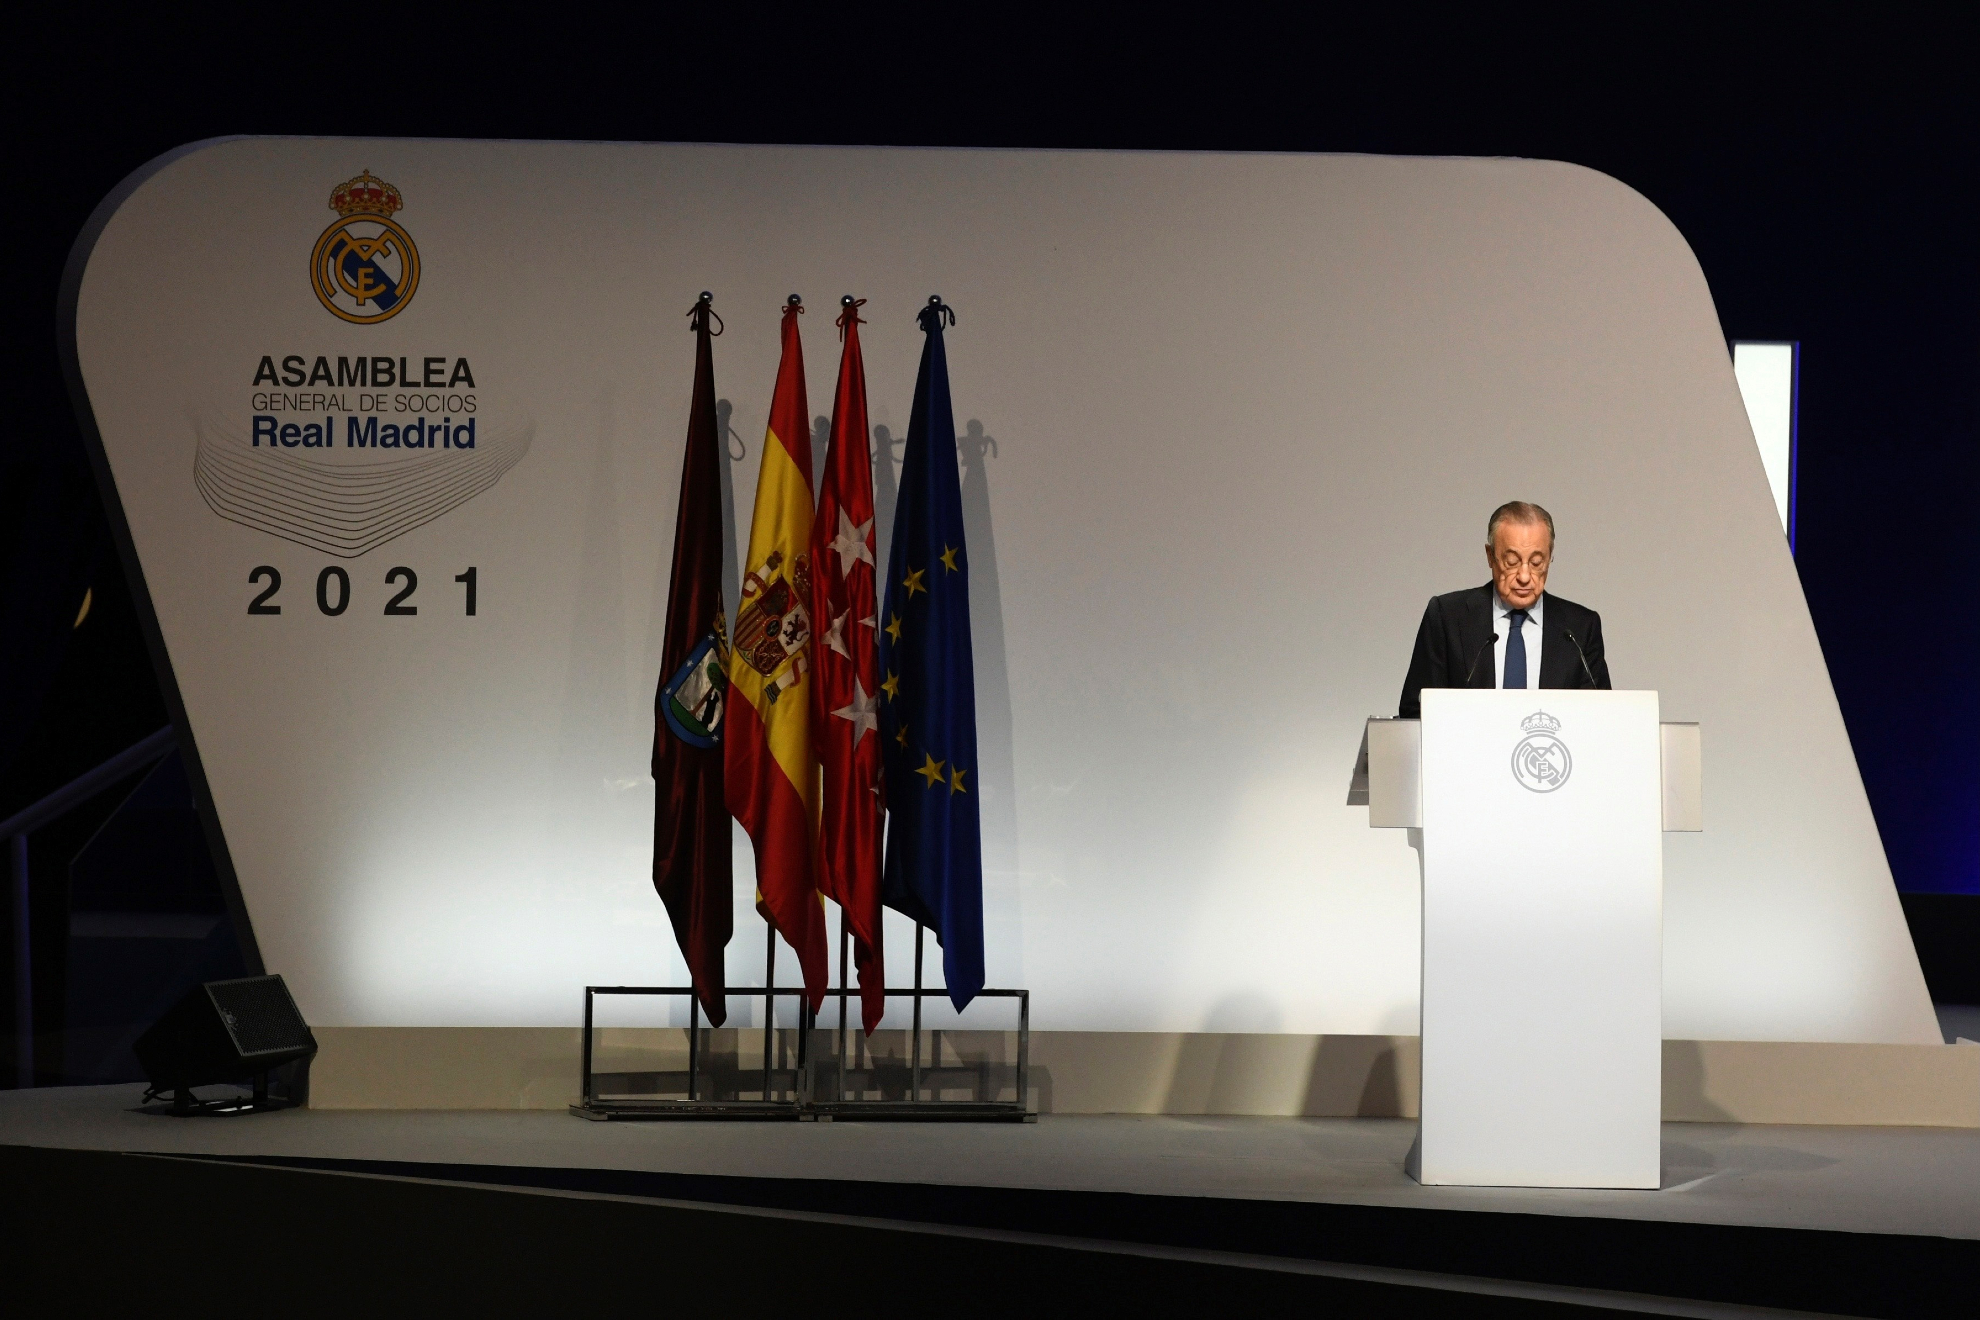 Asamblea General de Socios del Real Madrid hoy, en directo